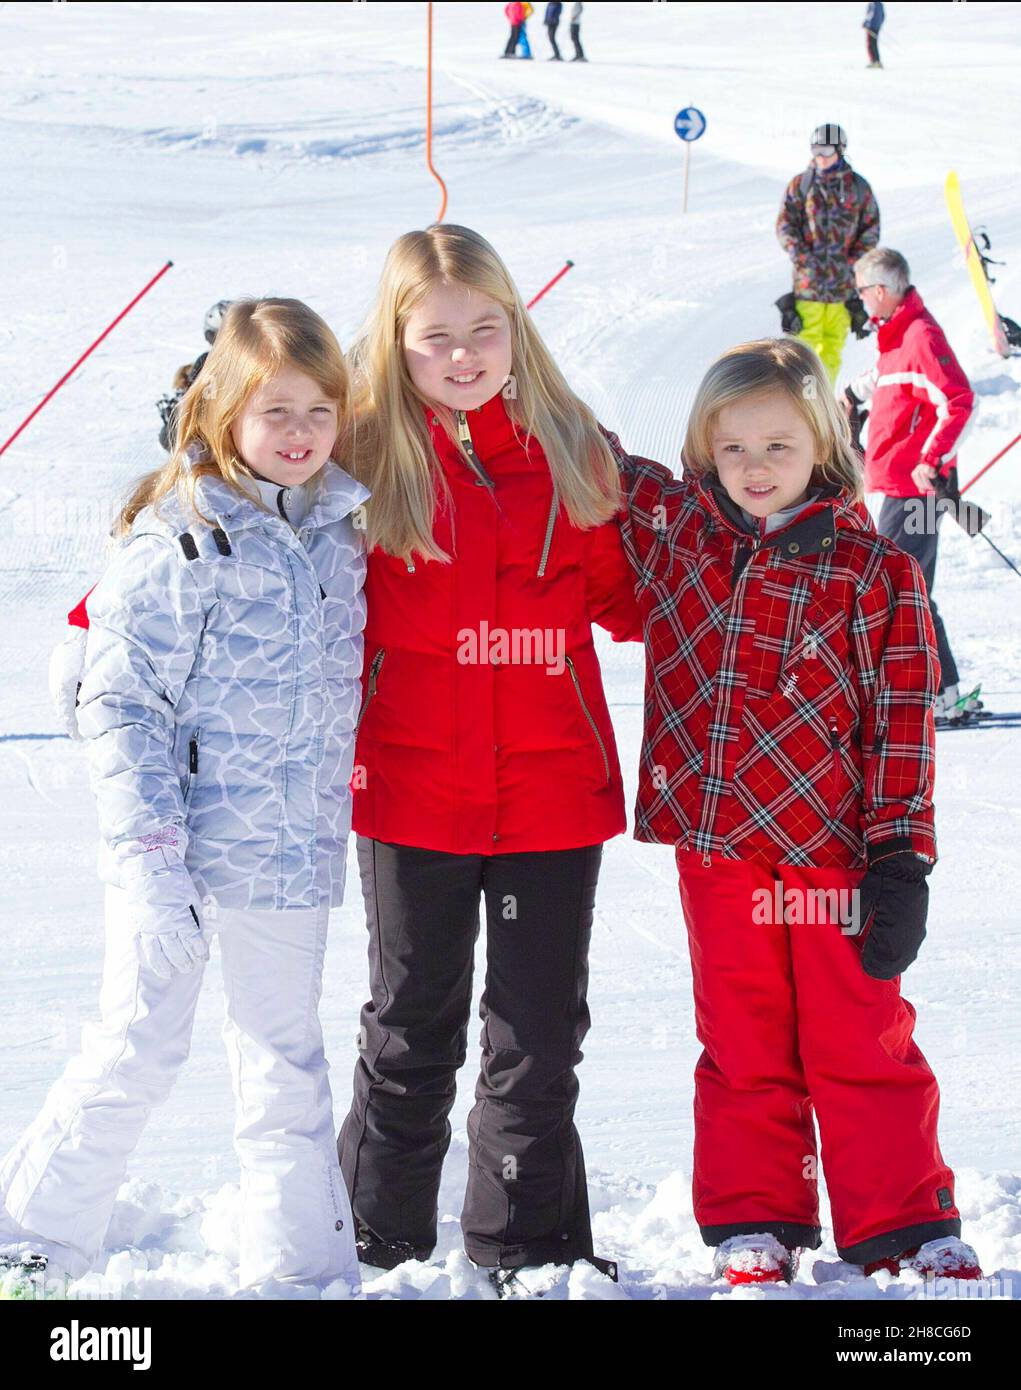 Kind Kinder Prinzessin Amalia, Prinzessin Alexia und Prinzessin Ariane von Holland, der Niederlande, Skiurlaub Winterurlaub in Lech *** Local Caption *** 00285284 Foto Stock